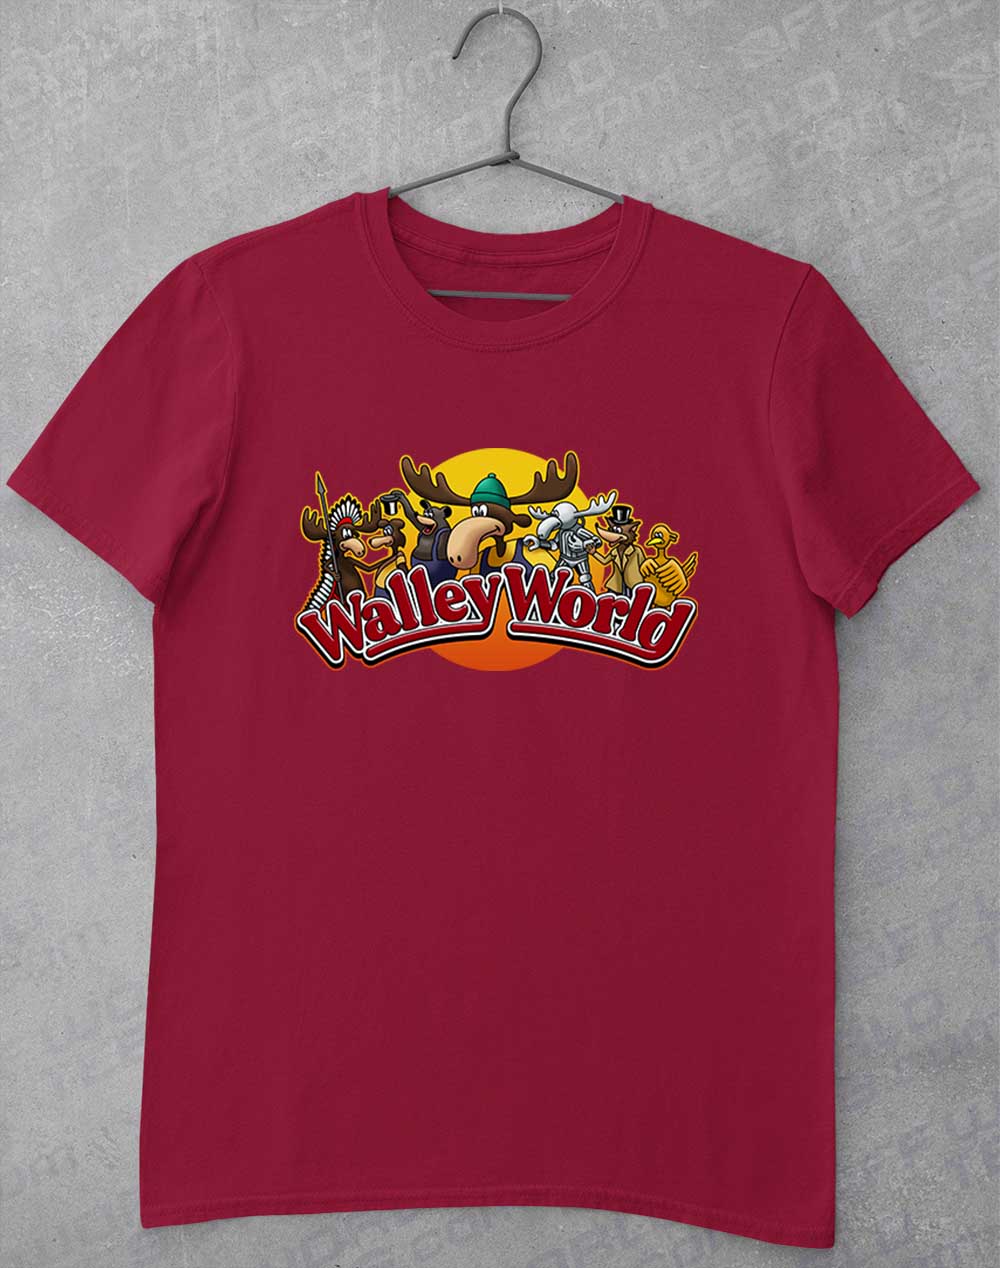 Cardinal Red - Walley World T-Shirt